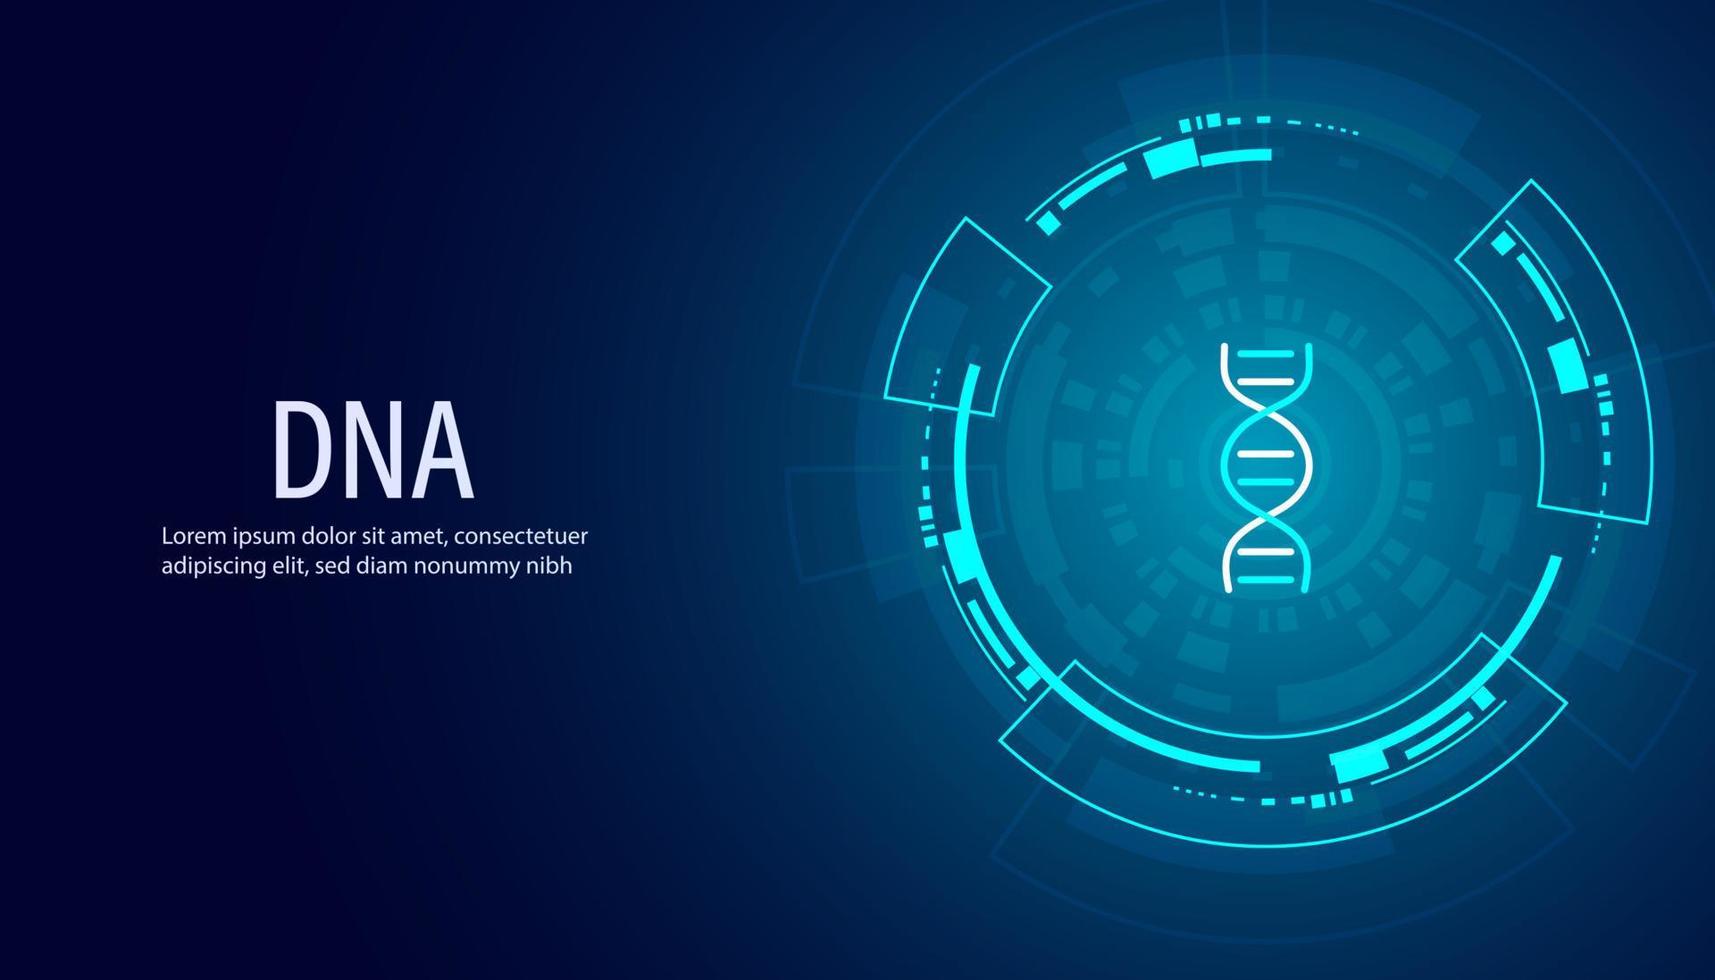 iconos planos abstractos de adn o ana y tecnología de círculos digitales edición de genes moderna ingeniería genética sobre un fondo azul vector